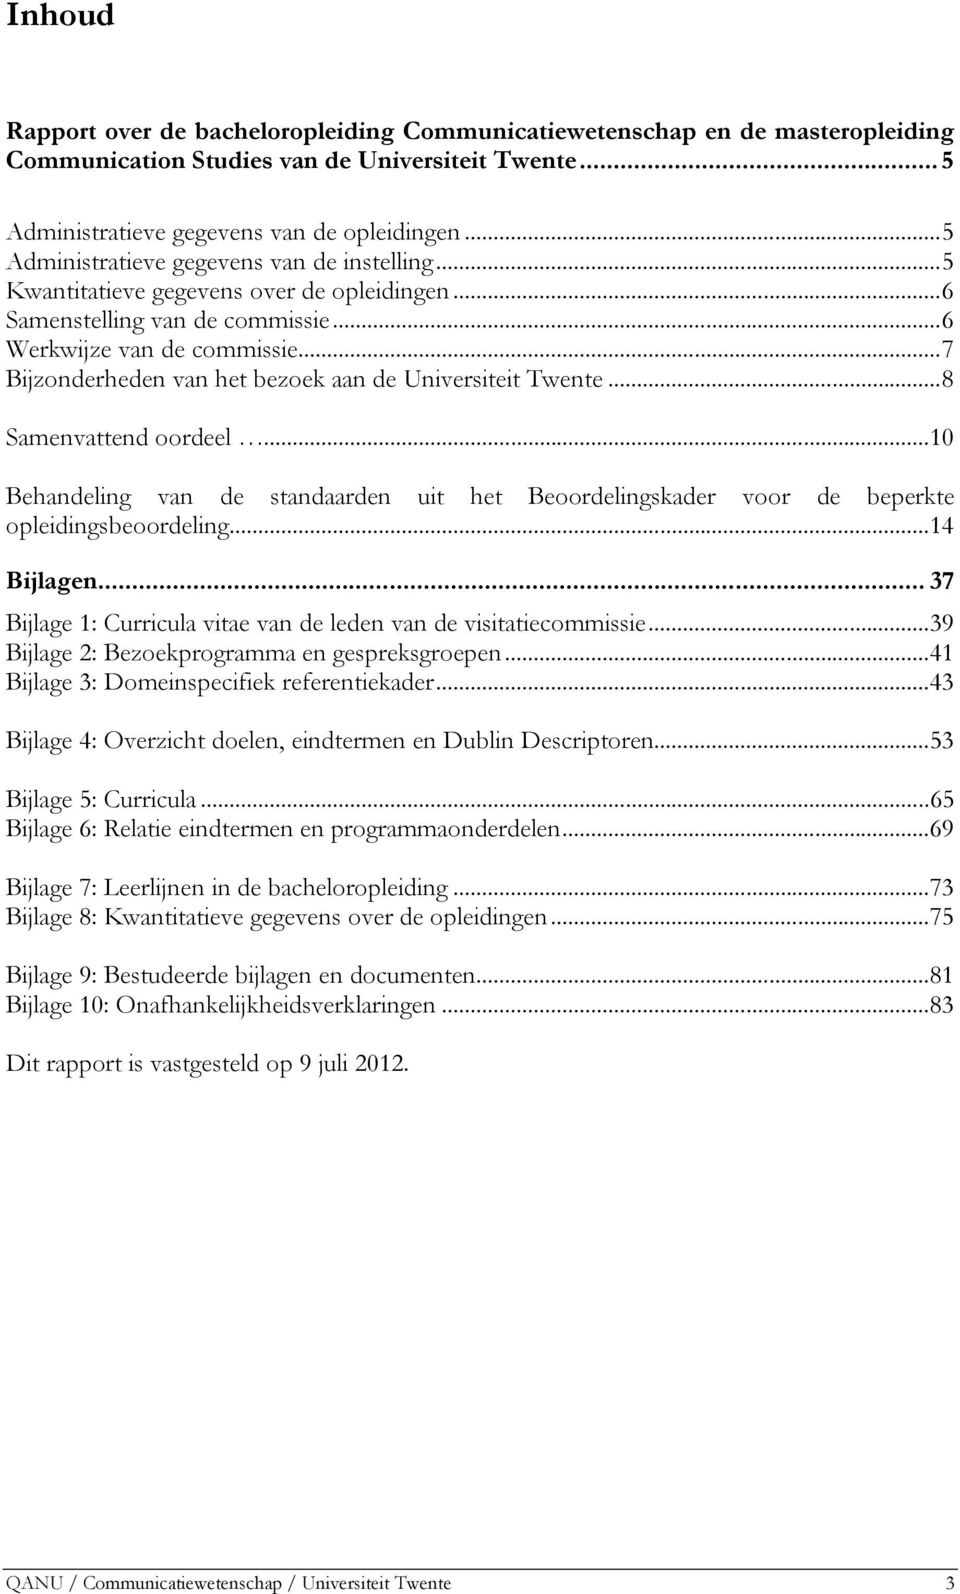 ..7 Bijzonderheden van het bezoek aan de Universiteit Twente...8 Samenvattend oordeel...10 Behandeling van de standaarden uit het Beoordelingskader voor de beperkte opleidingsbeoordeling...14 Bijlagen.